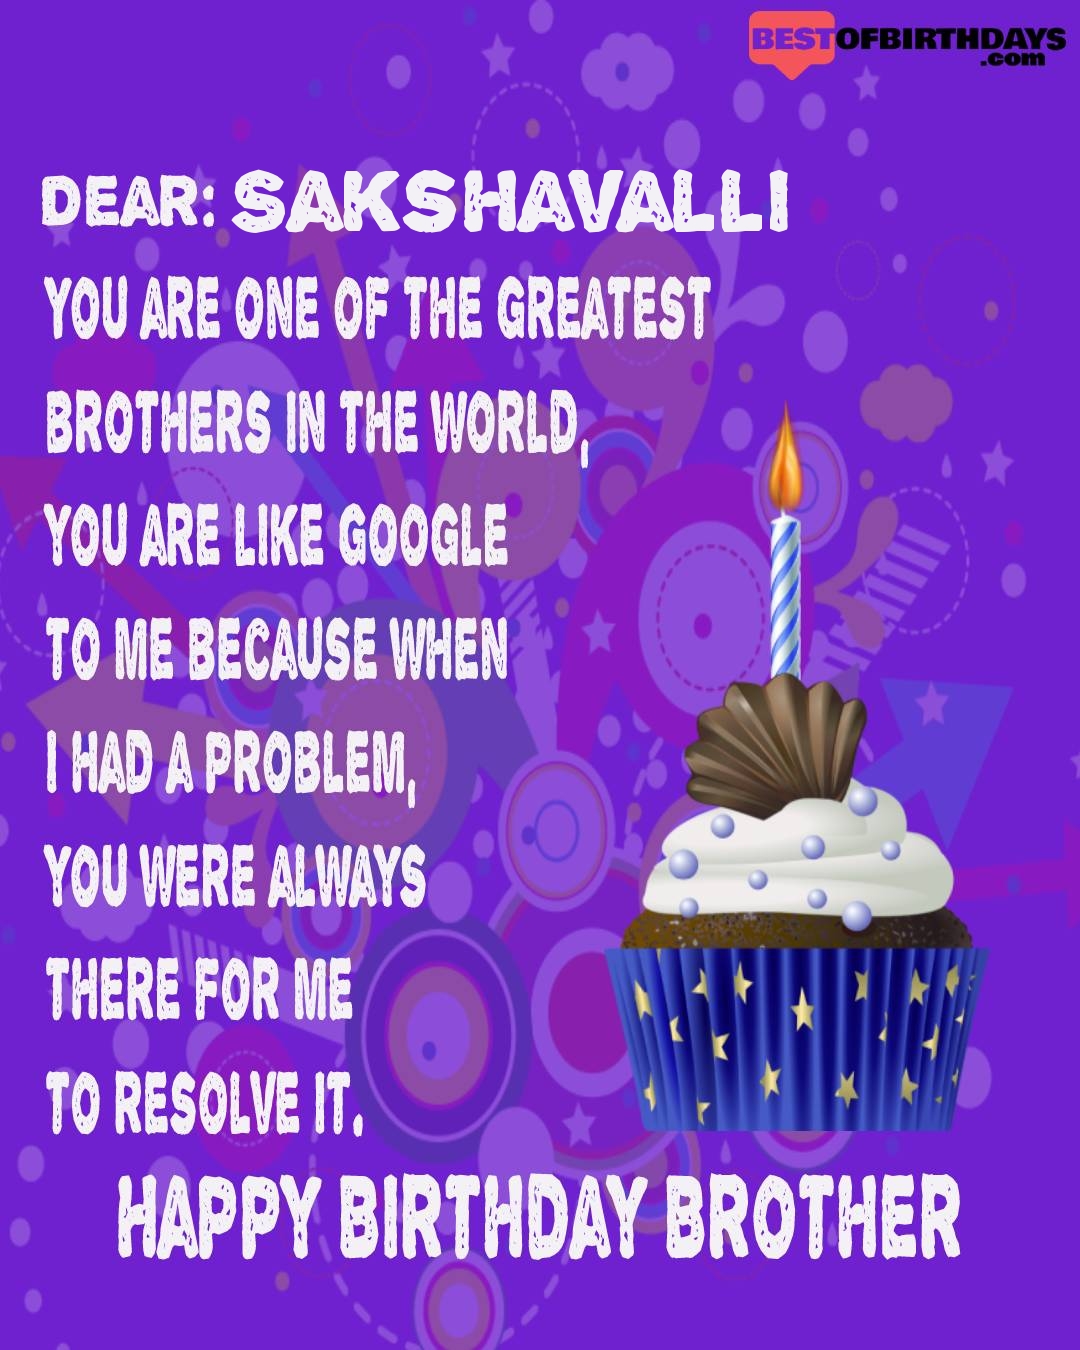 Happy birthday sakshavalli bhai brother bro